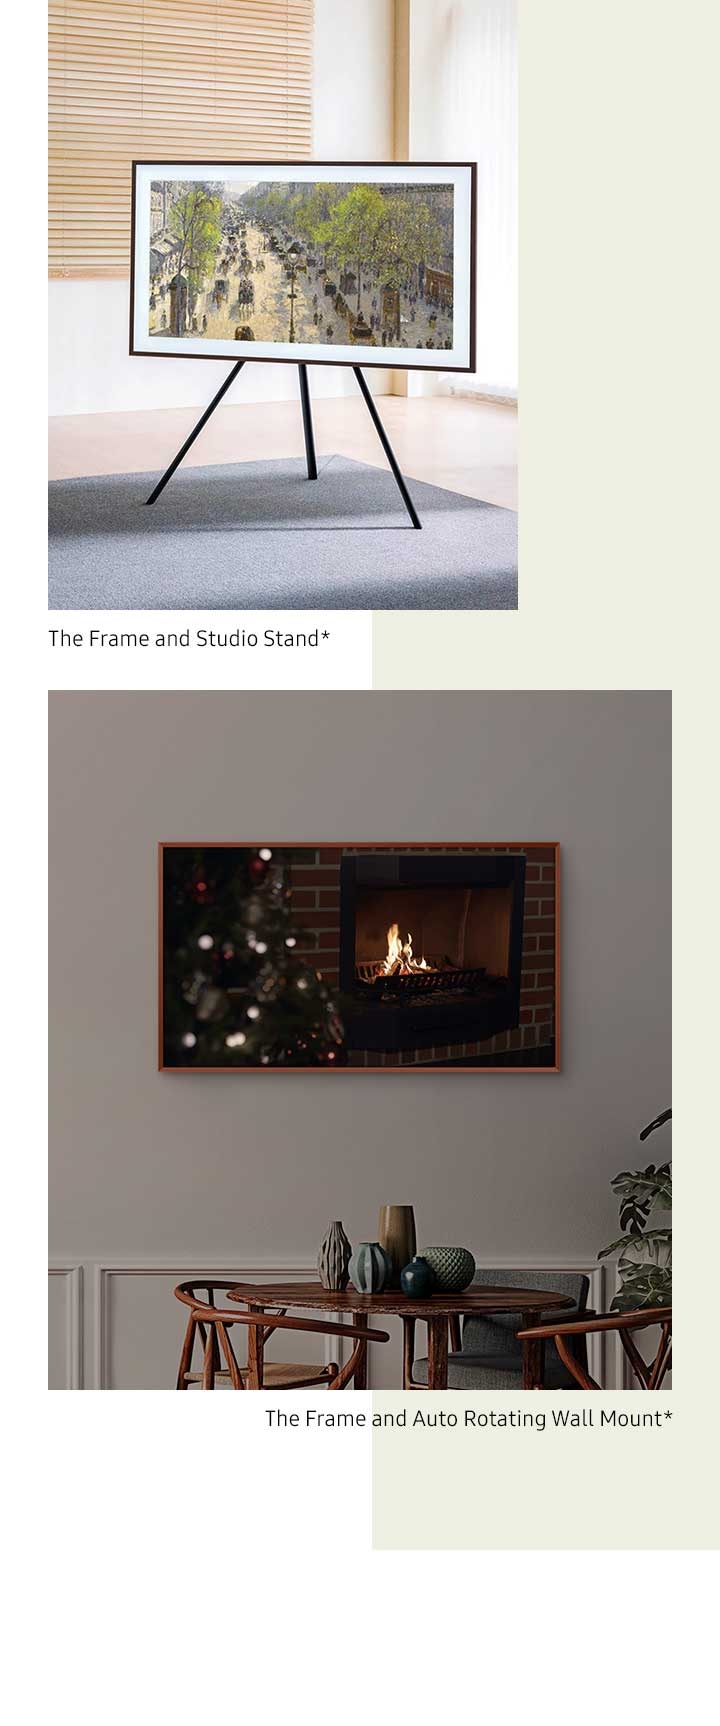 Η The Frame σε μια αυτόματη περιστρεφόμενη επιτοίχια βάση περιστρέφεται από οριζόντια σε λειτουργία πορτρέτου *. Η The Frame είναι τοποθετημένη σε Studio Stand *.